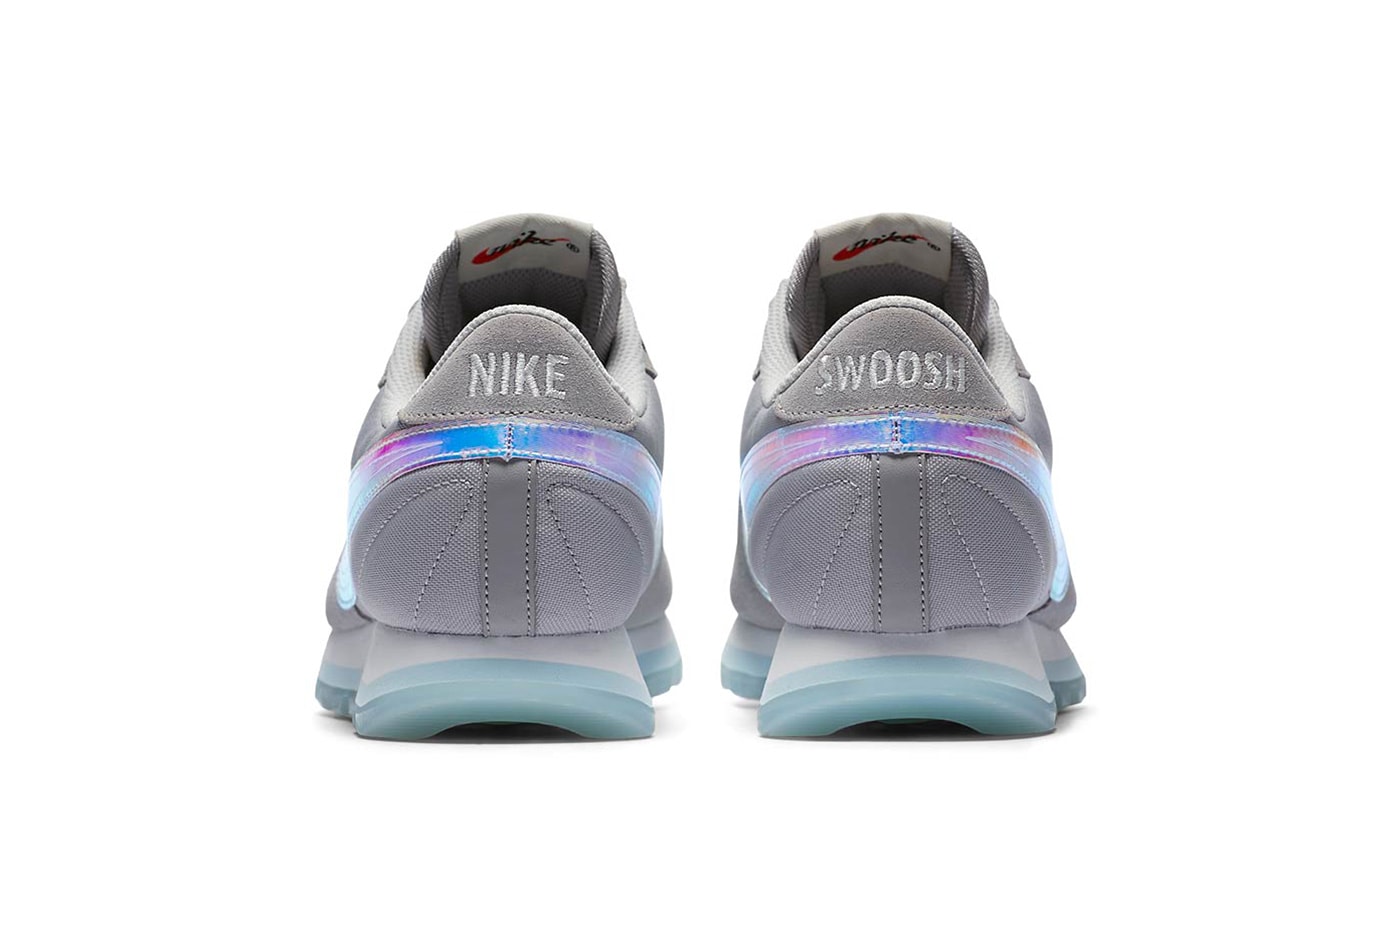 Nike Pre Love OX Atmosphere Grey june 2018 release date info drop sneakers shoes footwear